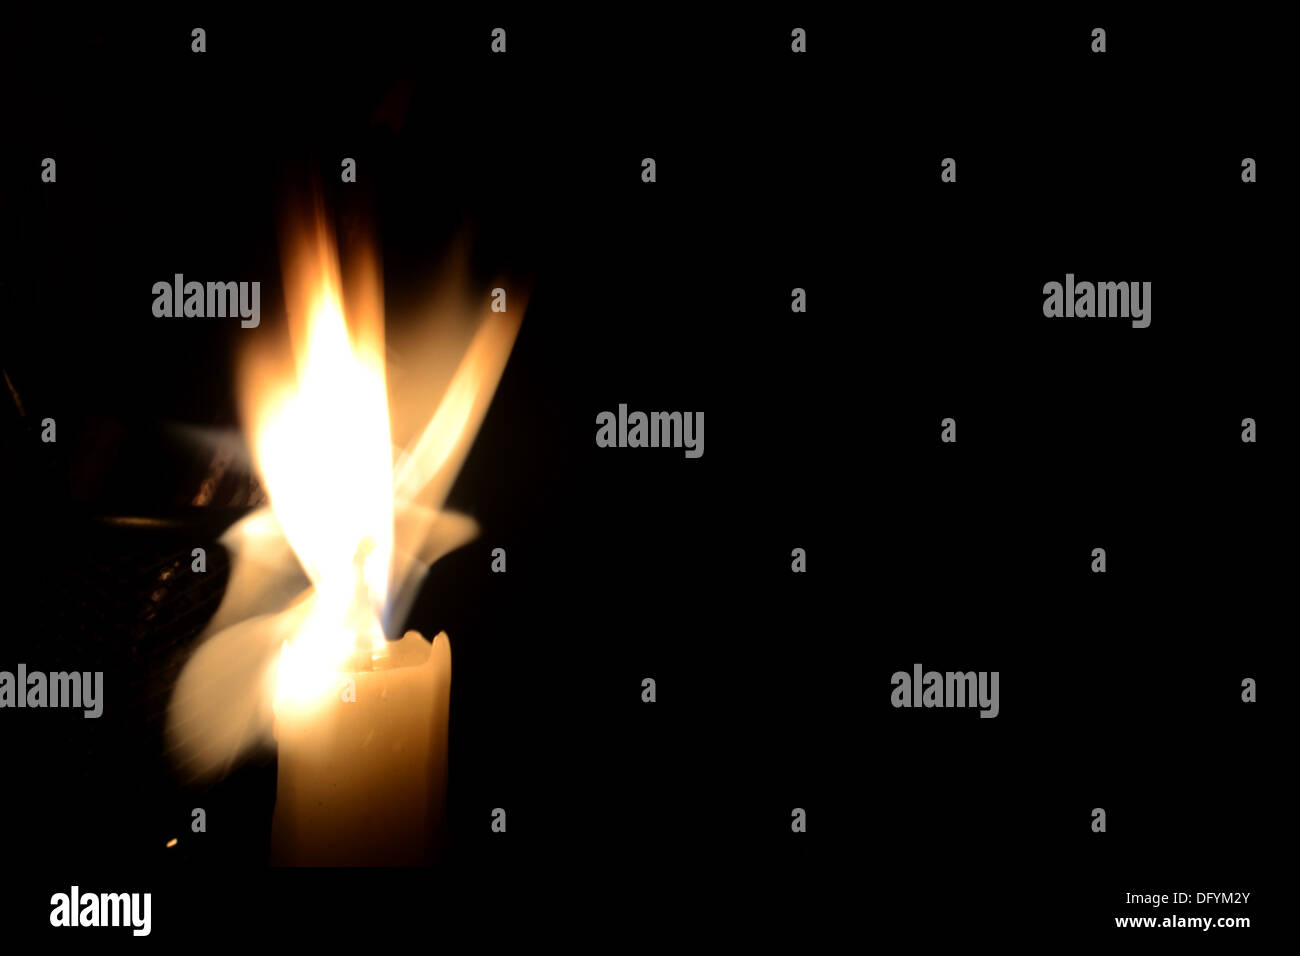 Una candela catturato a bassa velocità otturatore, diverse forme assunte da una semplice fiamma lunga esposizione esperimento Foto Stock